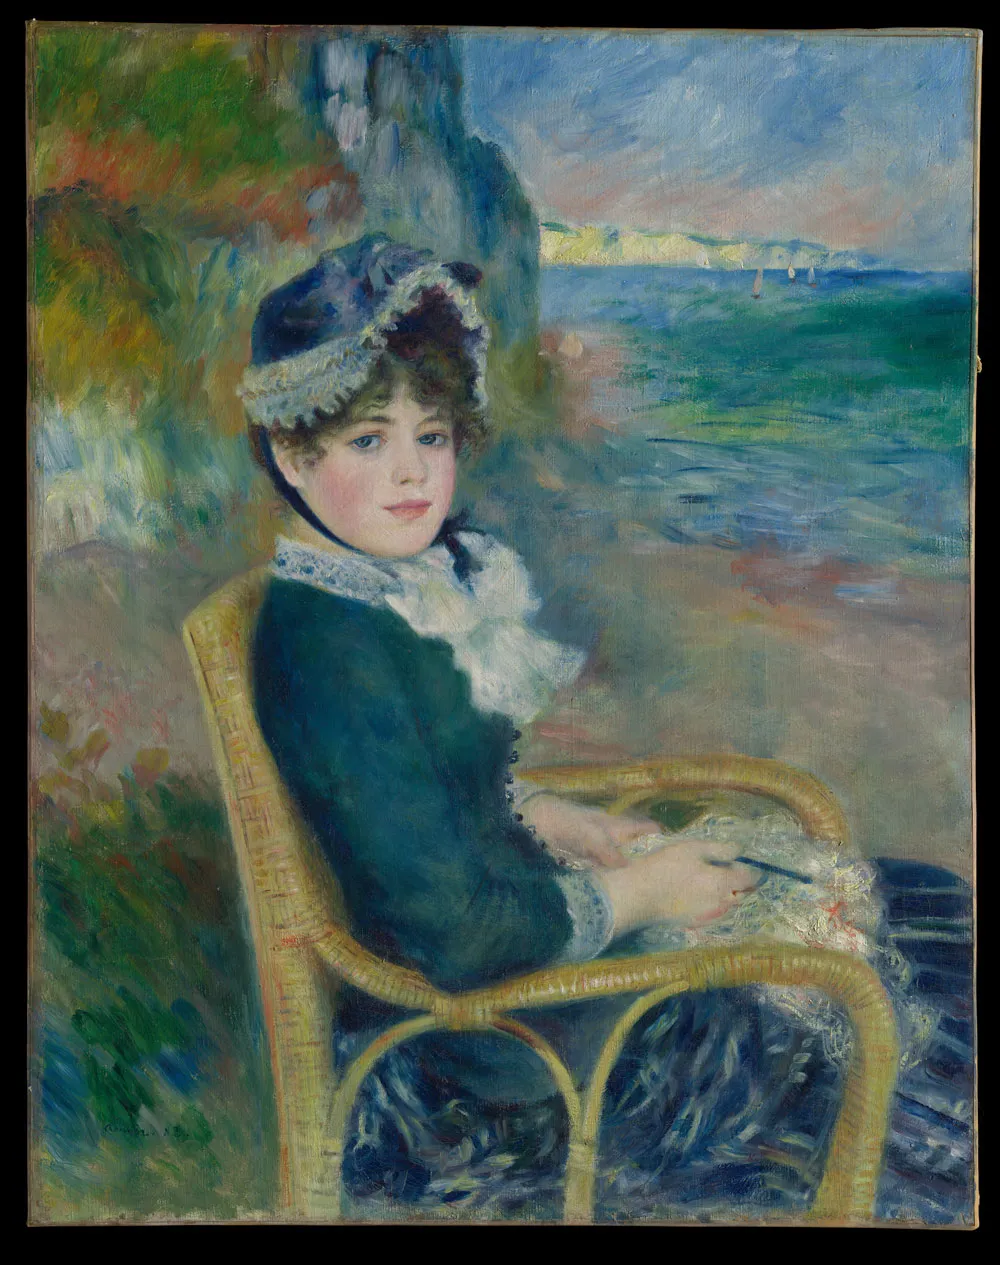 "By the Seashore", 1883 by Auguste Renoir